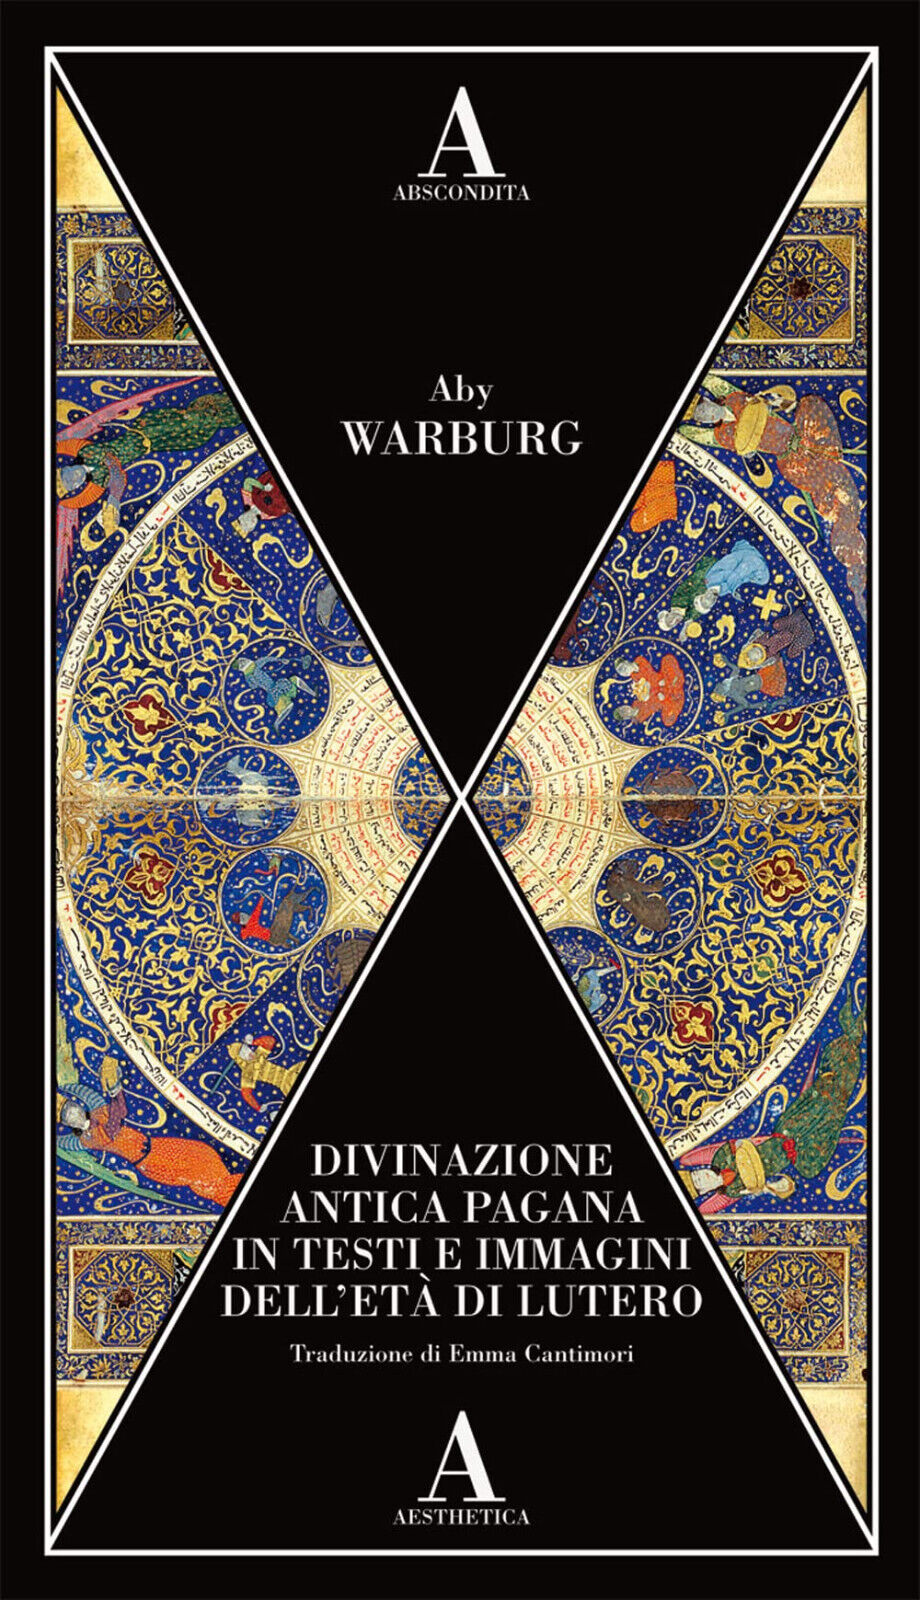 Divinazione antica pagana in testi e immagini dell'et? di Lutero - Aby Warburg